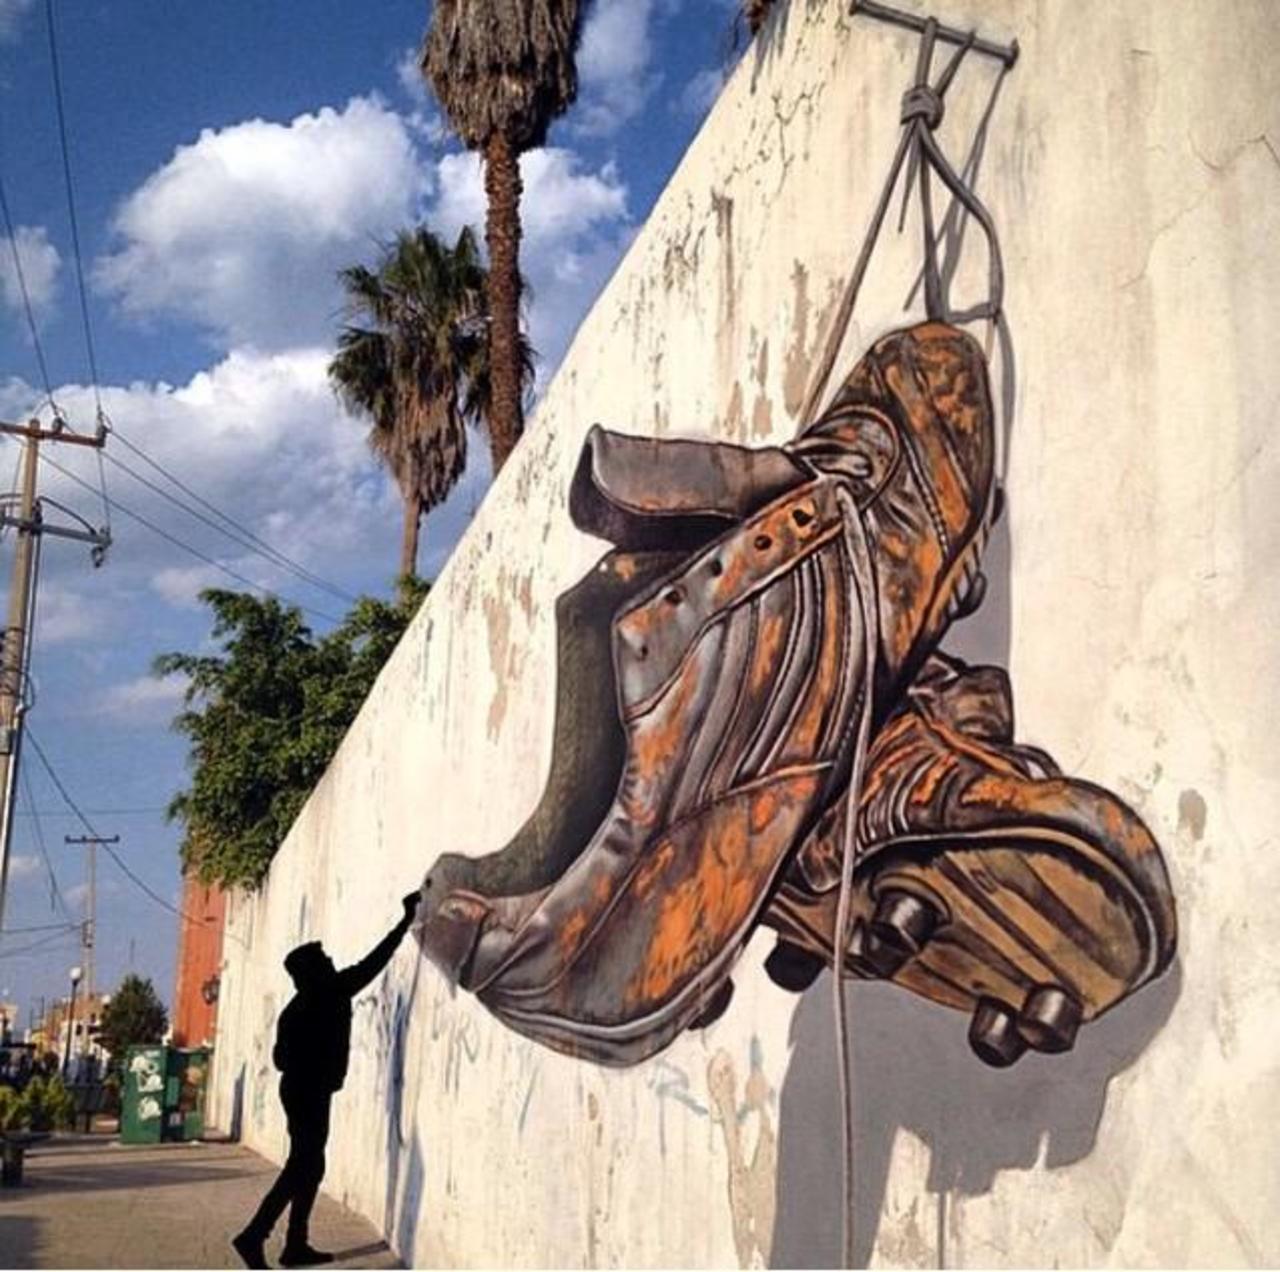 insane! RT @GoogleStreetArt: Awesome anamorphic 3D Street Art by Juandres Vera 

#art #graffiti #mural #streetart http://t.co/tlHjecHisZ